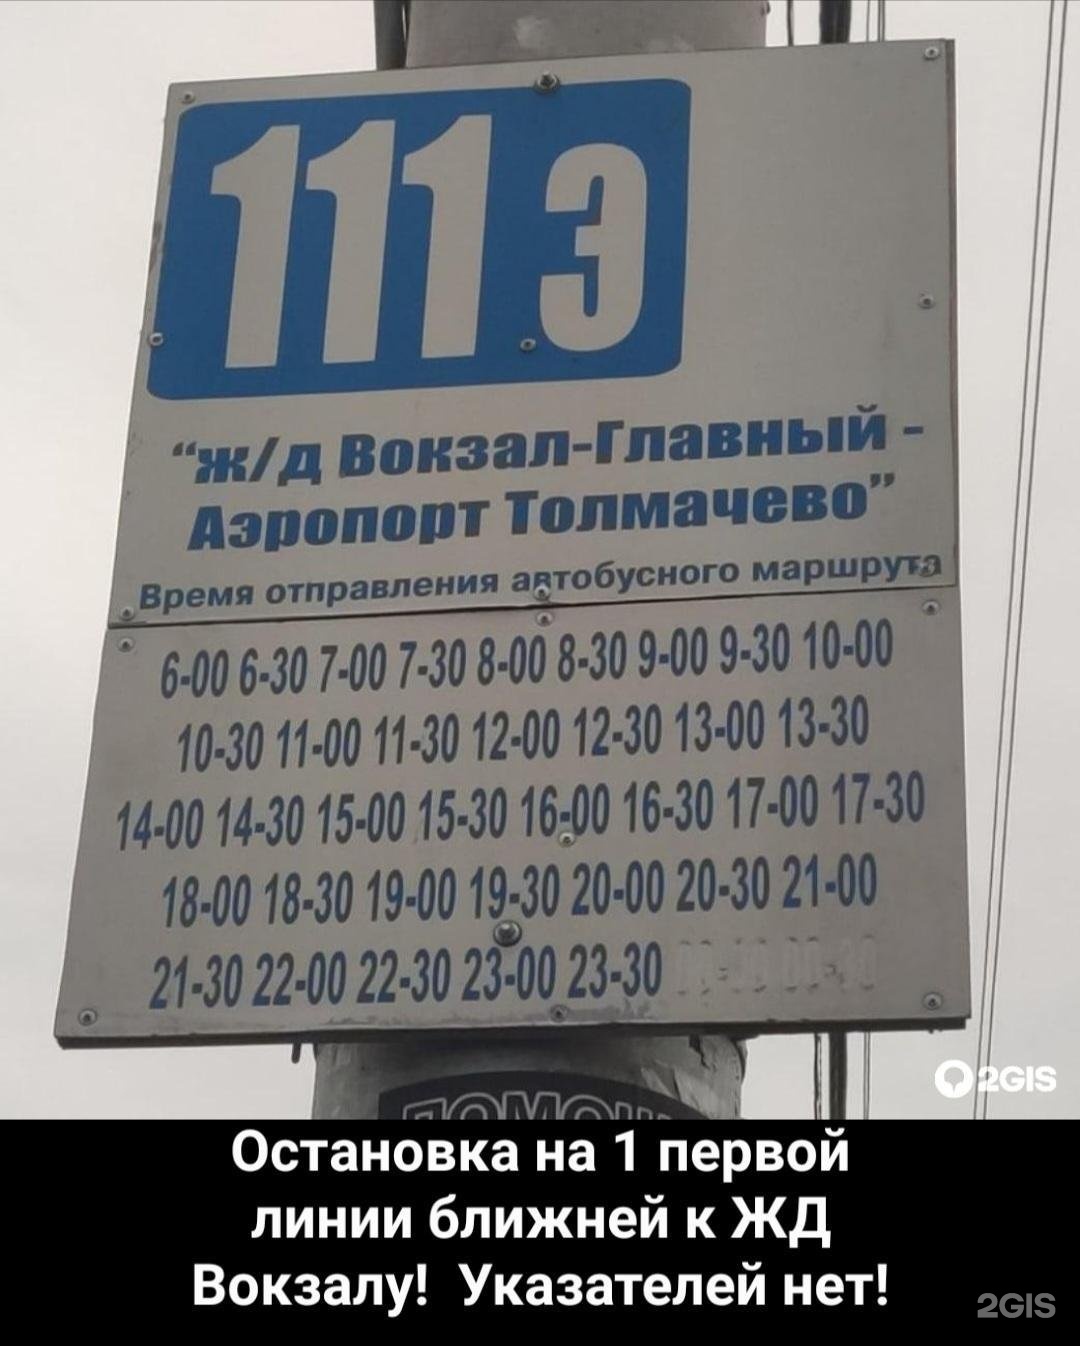 Расписание 111 автобуса новосибирск. Автобус 111 э Толмачево Новосибирск. Расписание автобуса 111э Новосибирск. 111 Автобус Новосибирск расписание. Маршрут 111 автобуса Новосибирск.